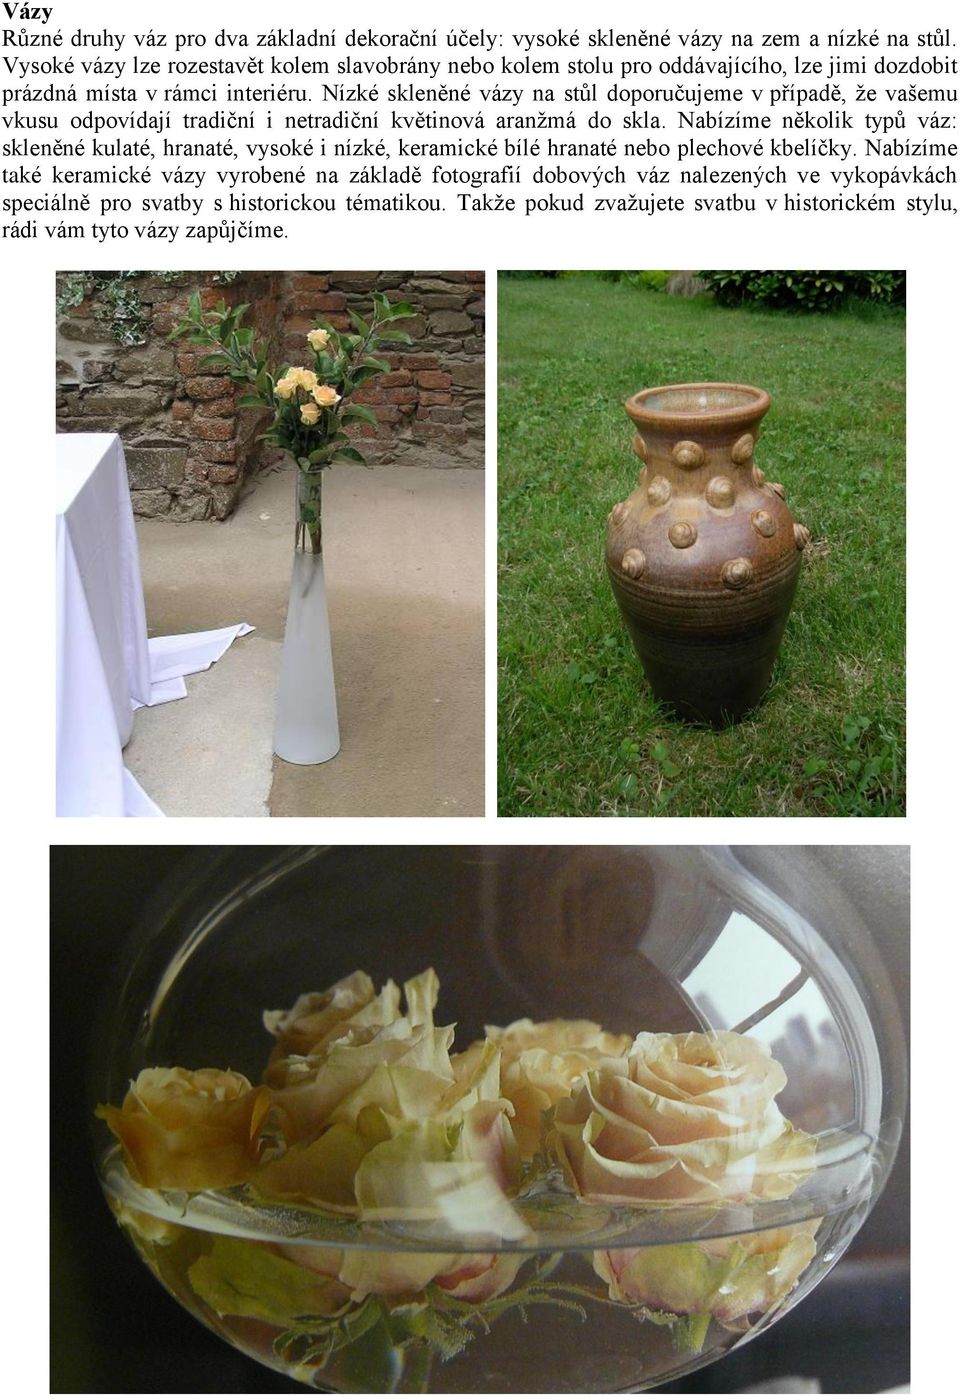 Nízké skleněné vázy na stůl doporučujeme v případě, že vašemu vkusu odpovídají tradiční i netradiční květinová aranžmá do skla.